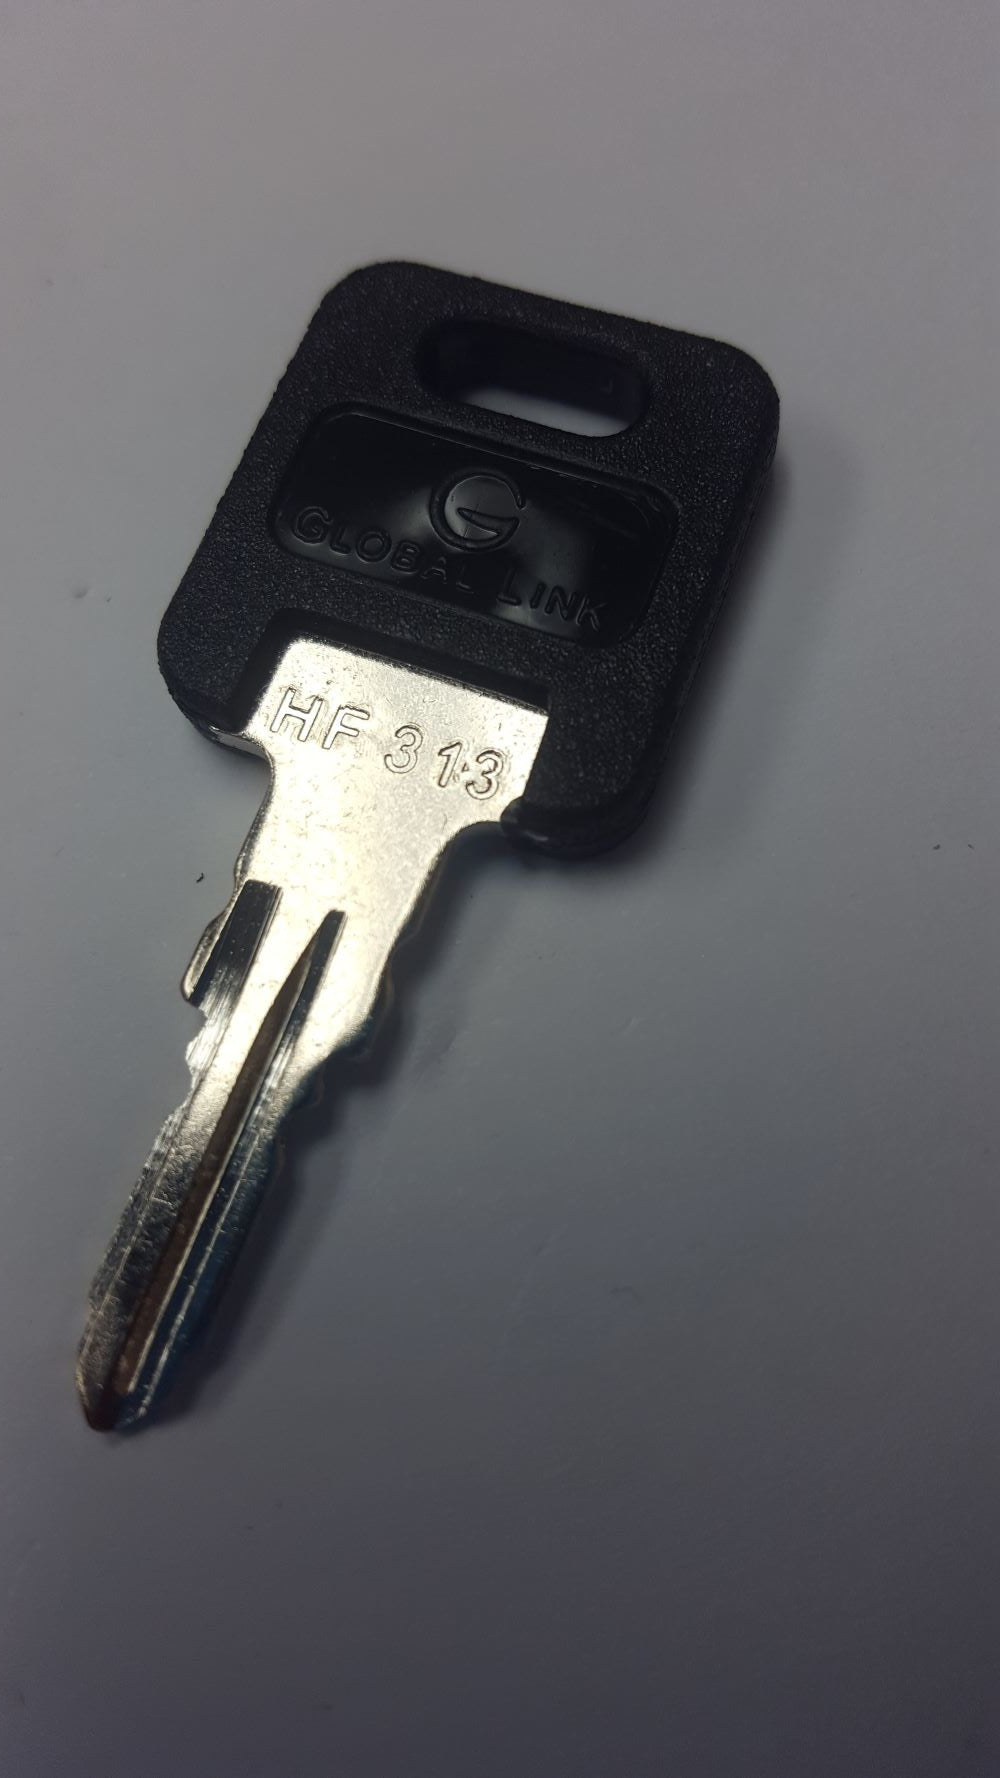 CPG KEY-HF-313 Pre-cut Stamped FIC Replacemnt HF313 Key